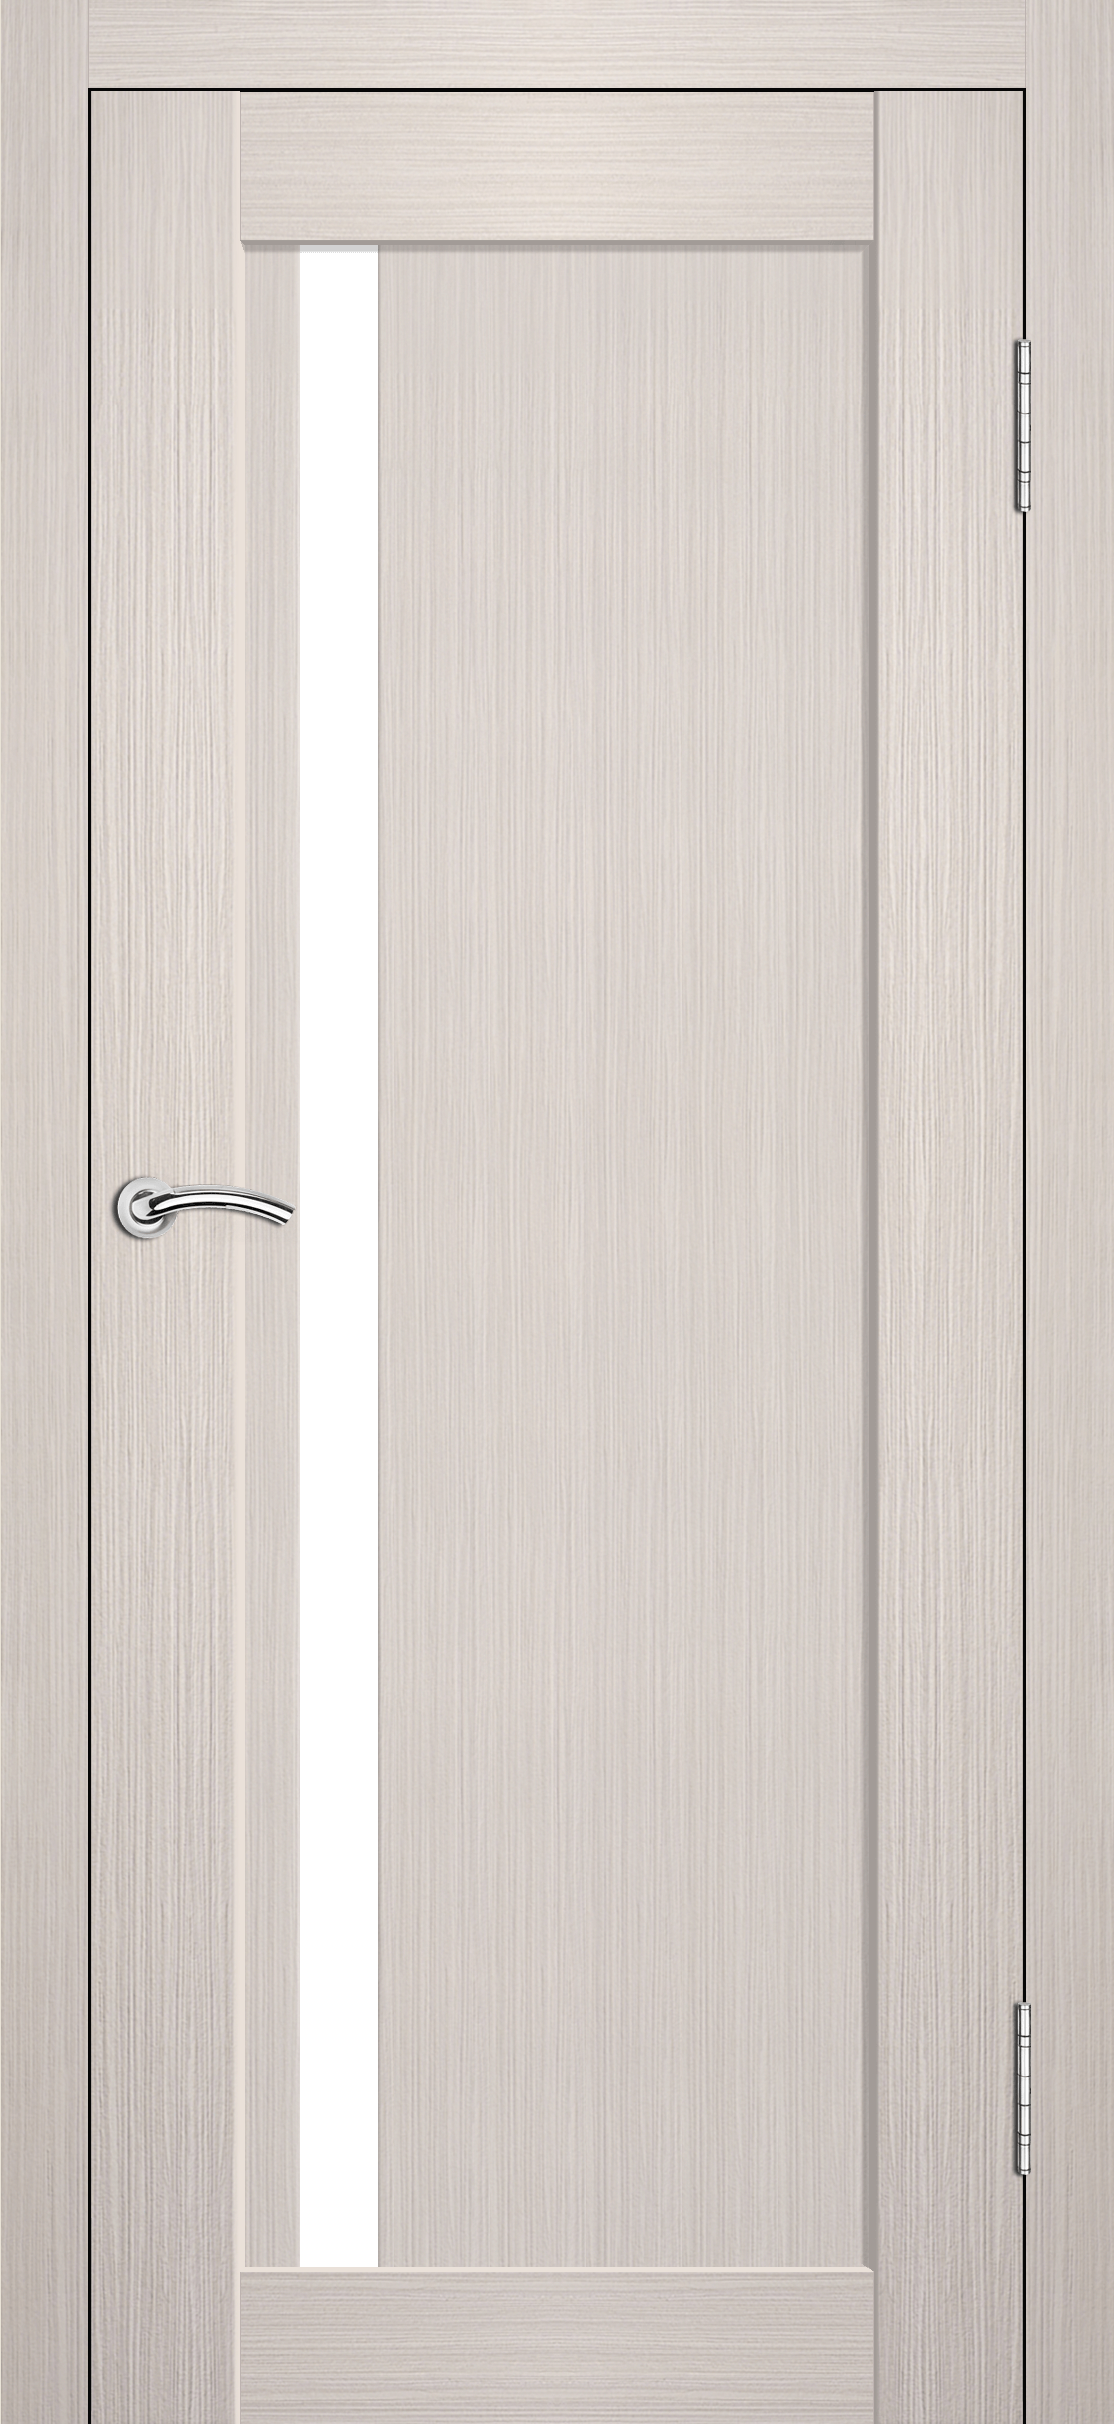 Межкомнатная дверь «Стайл ». Вид отделки полипропилен Аляска Cтандартный наличник